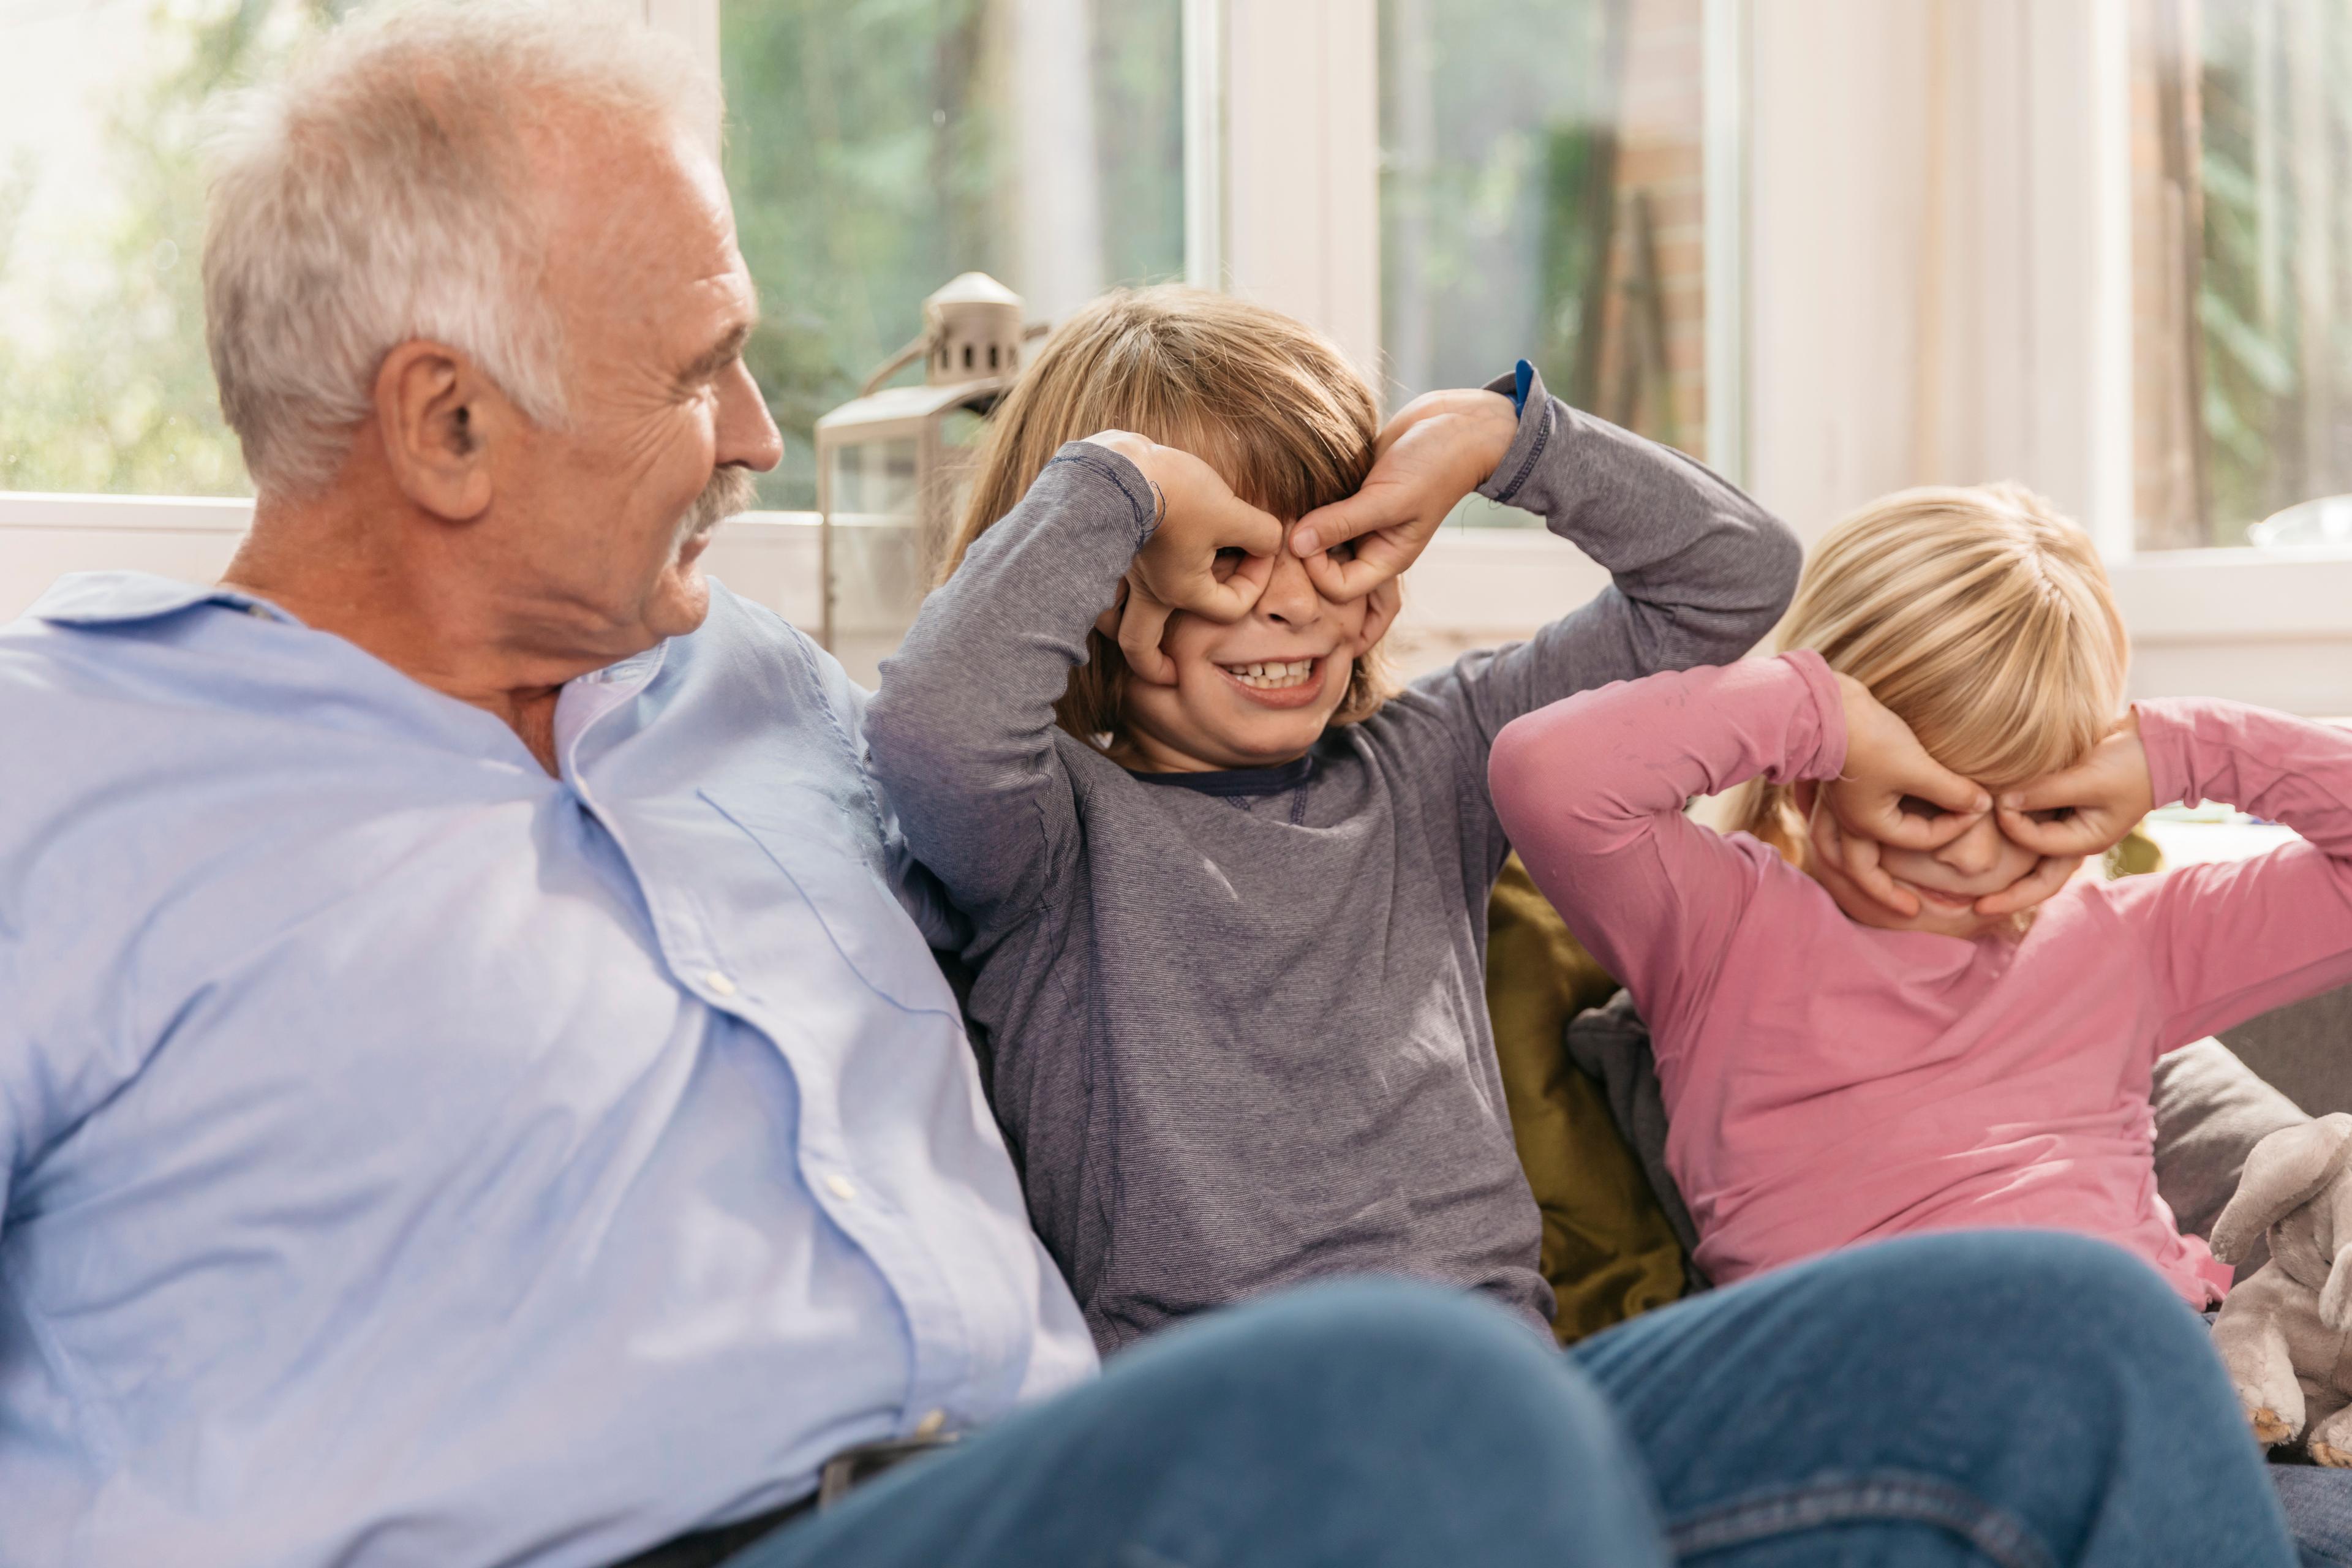 Un uomo anziano in salotto su un divano, presumibilmente i nipoti accanto a lui, che modellano gli occhiali con le mani e fanno una smorfia.